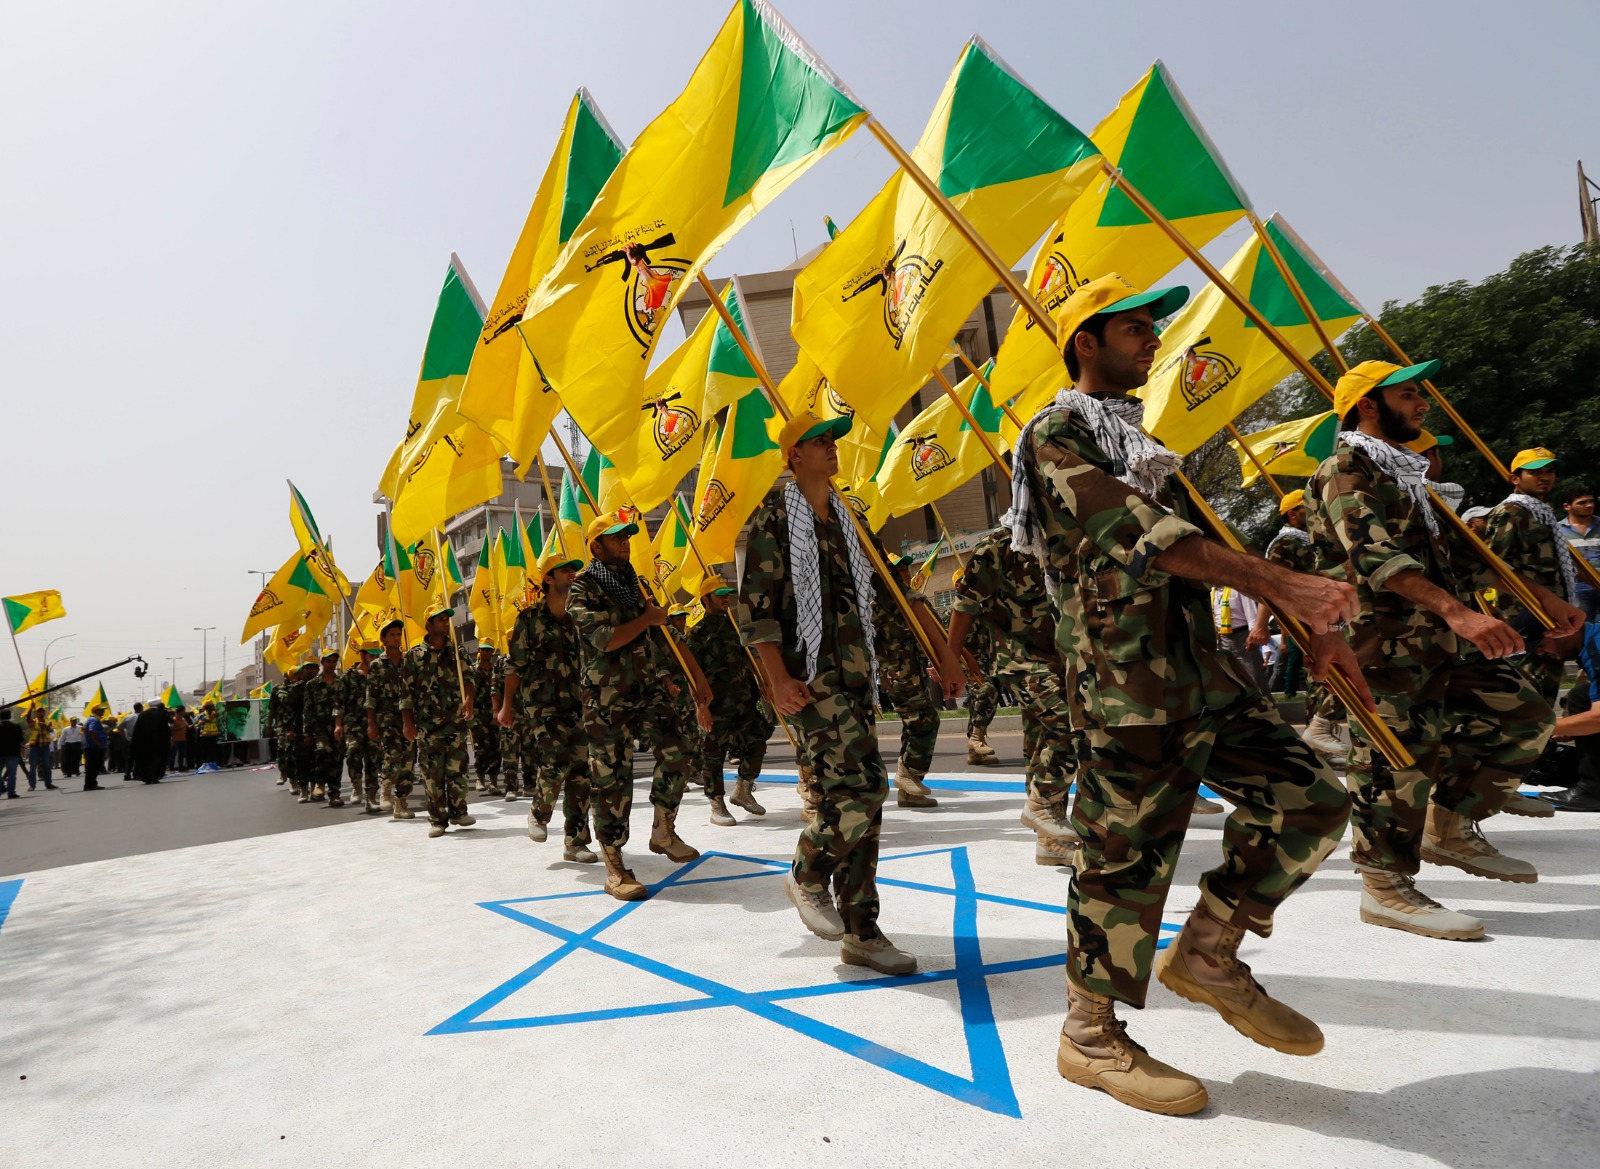 عناصر من كتائب حزب الله العراقية المدعومة من إيران خلال موكب بمناسبة يوم القدس السنوي بالعاصمة بغداد- 25 يوليو 2014